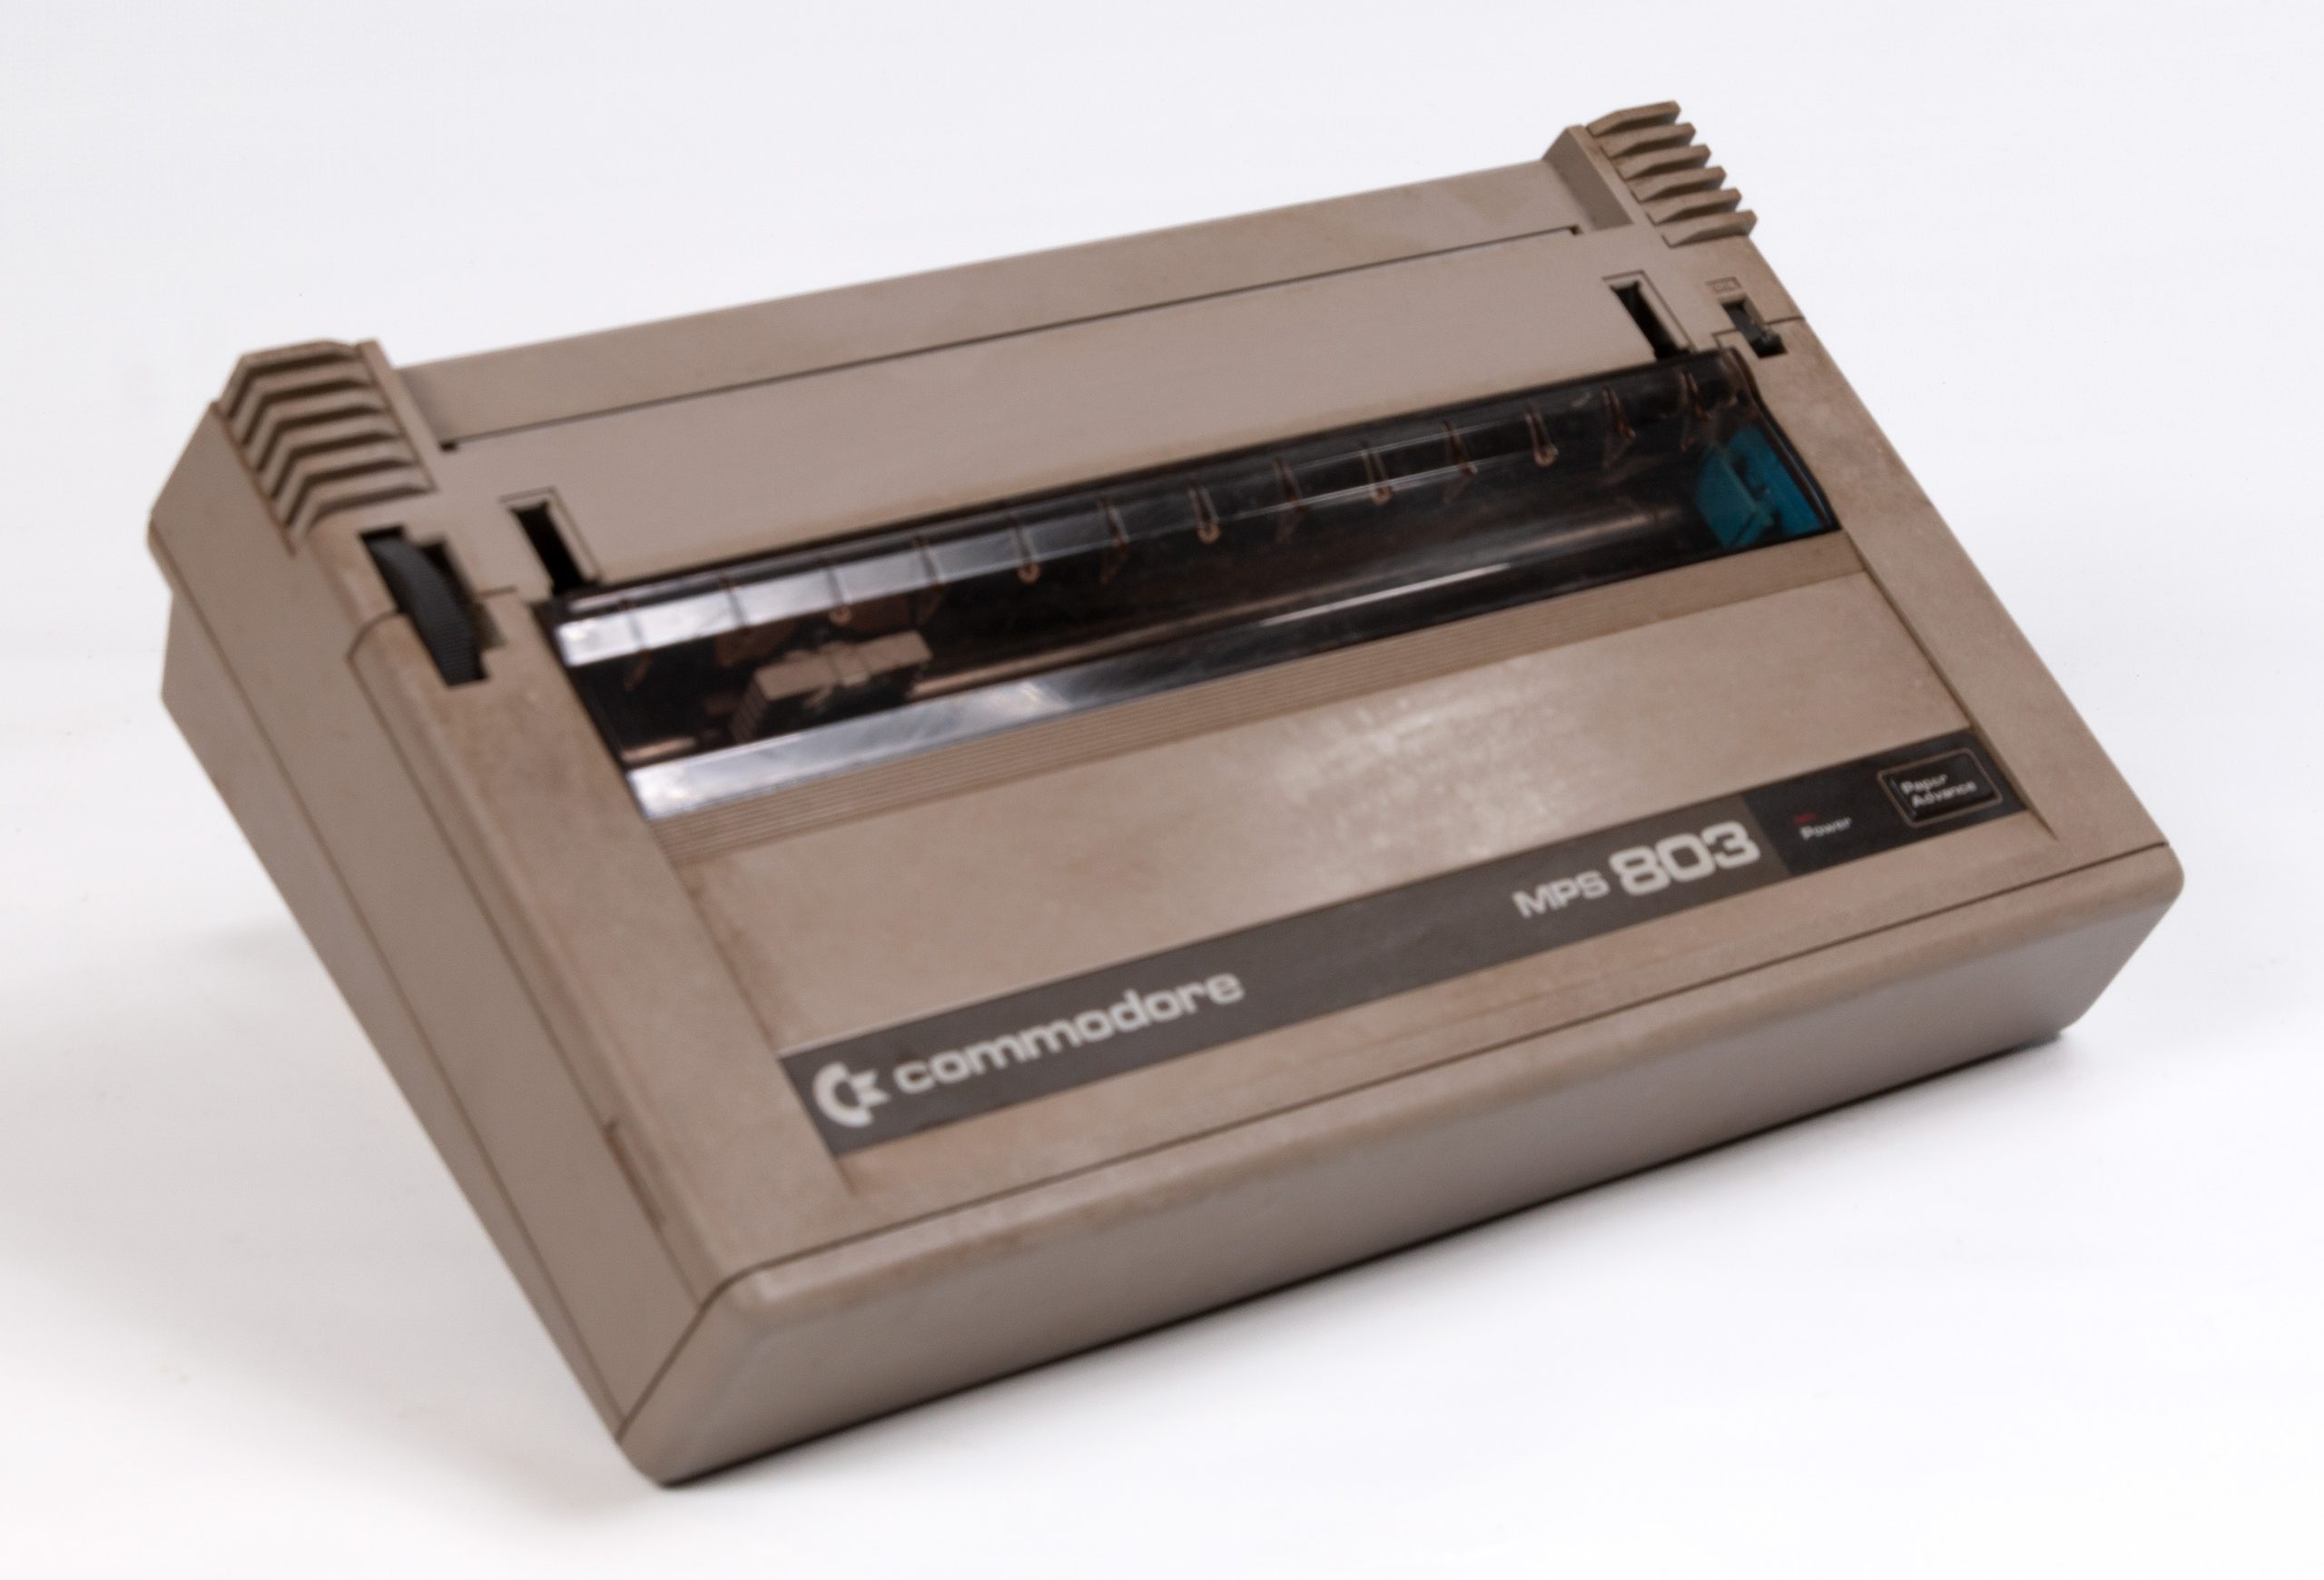 Impressora MPS 803